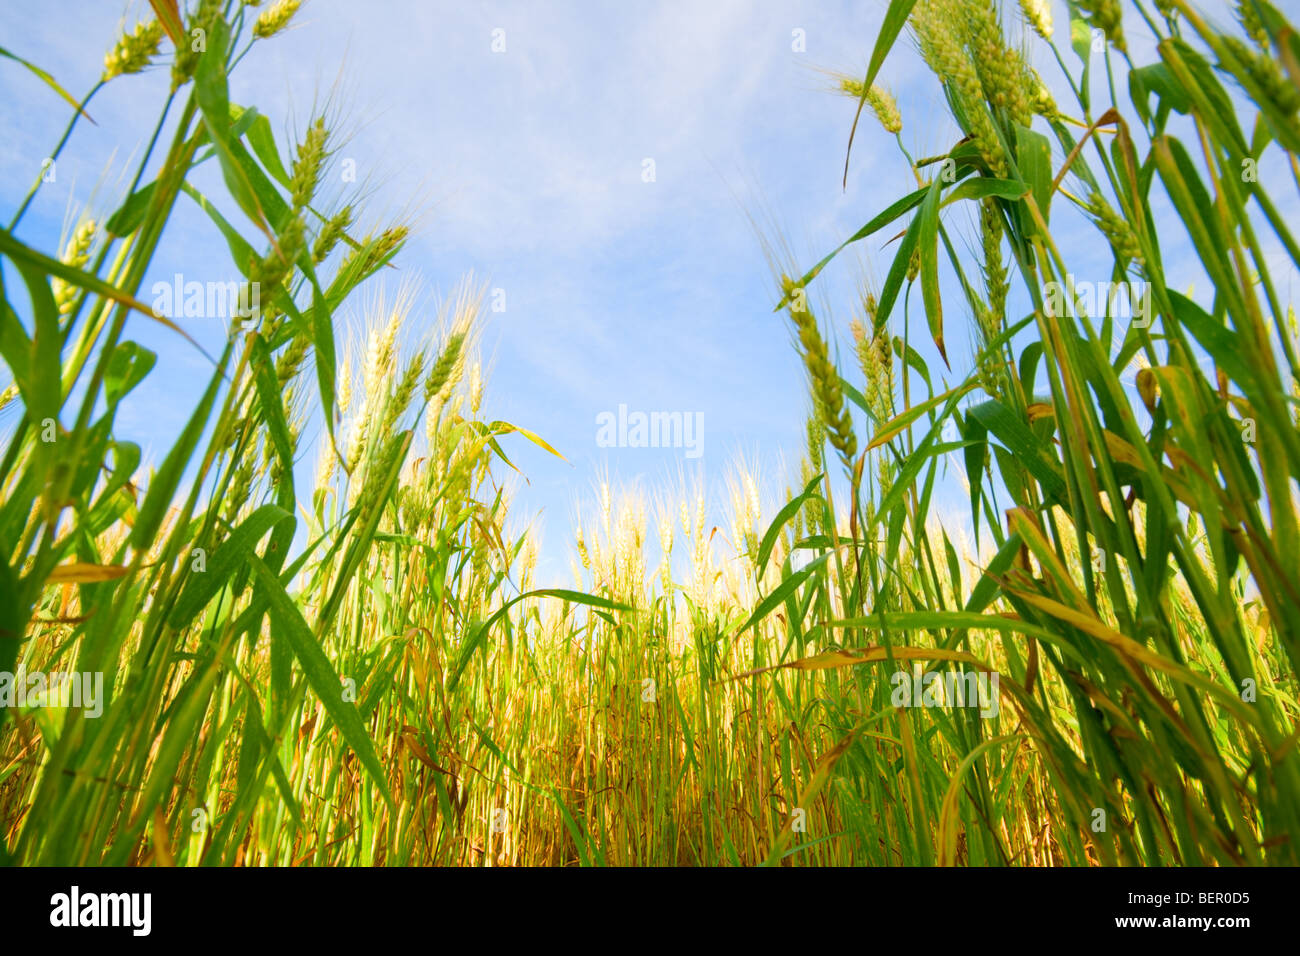 Wheat stalks Stock Photo